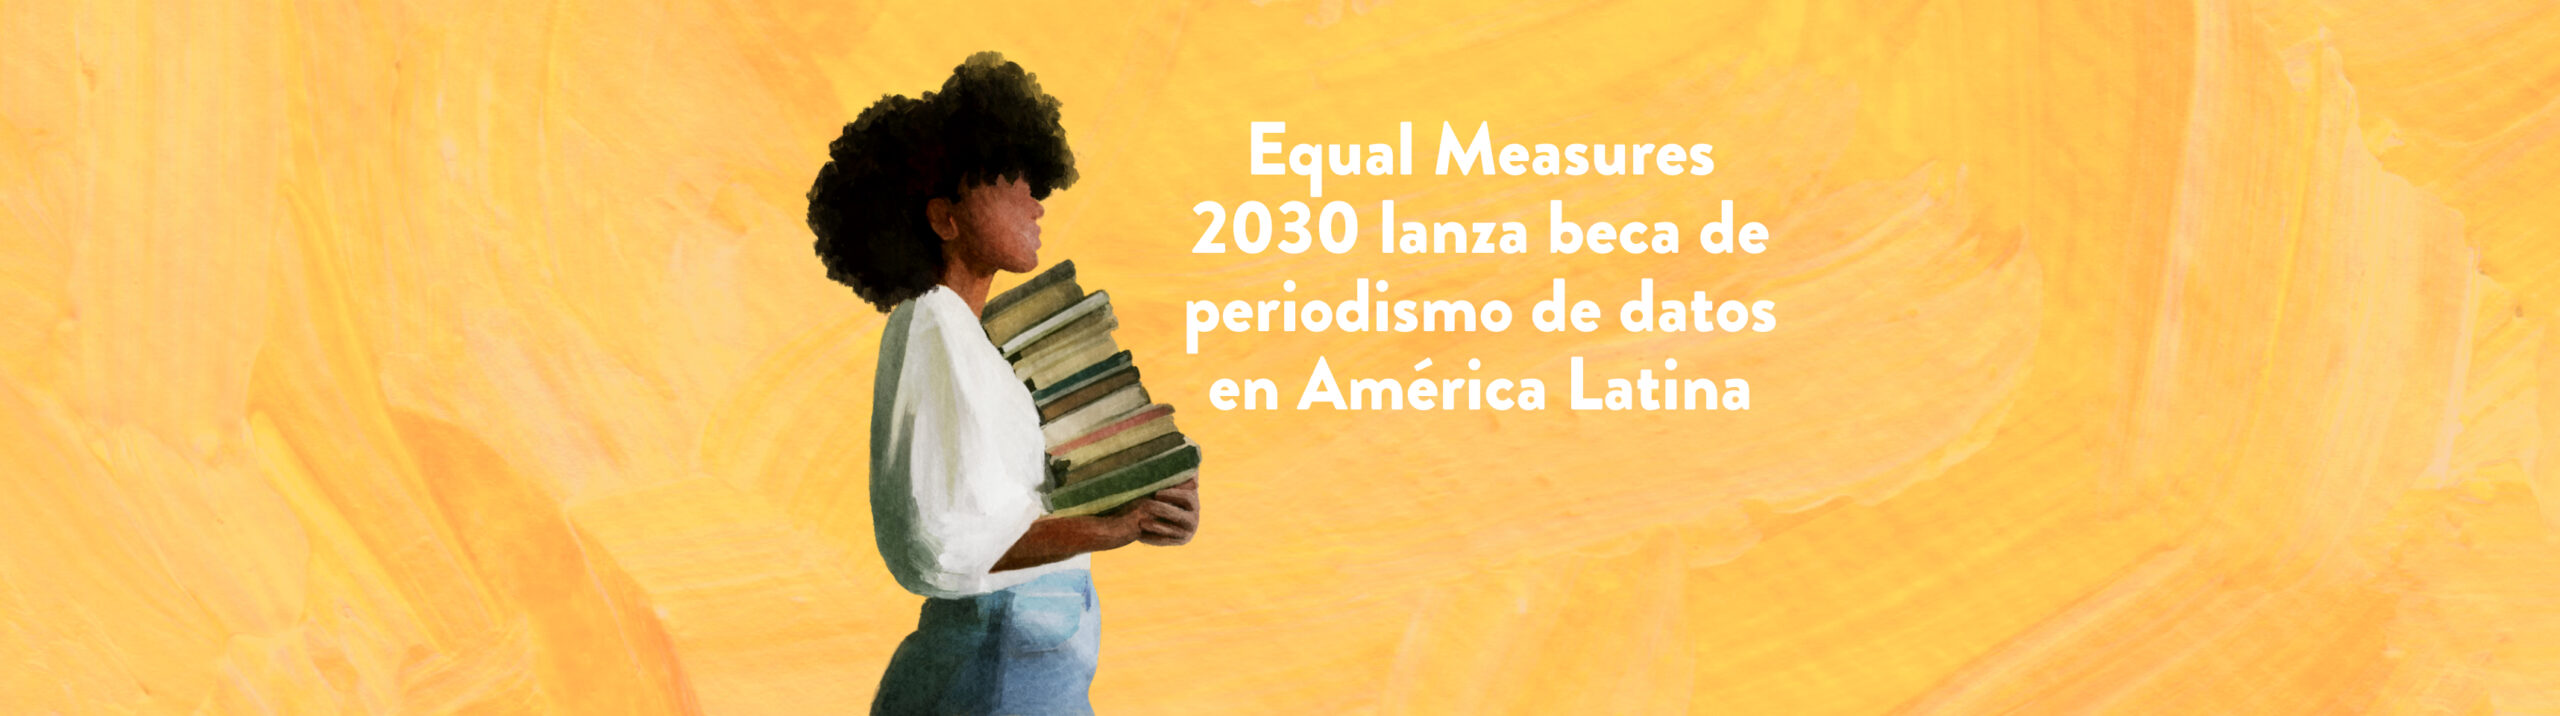 Equal Measures 2030 lanza beca de periodismo de datos en América Latina 